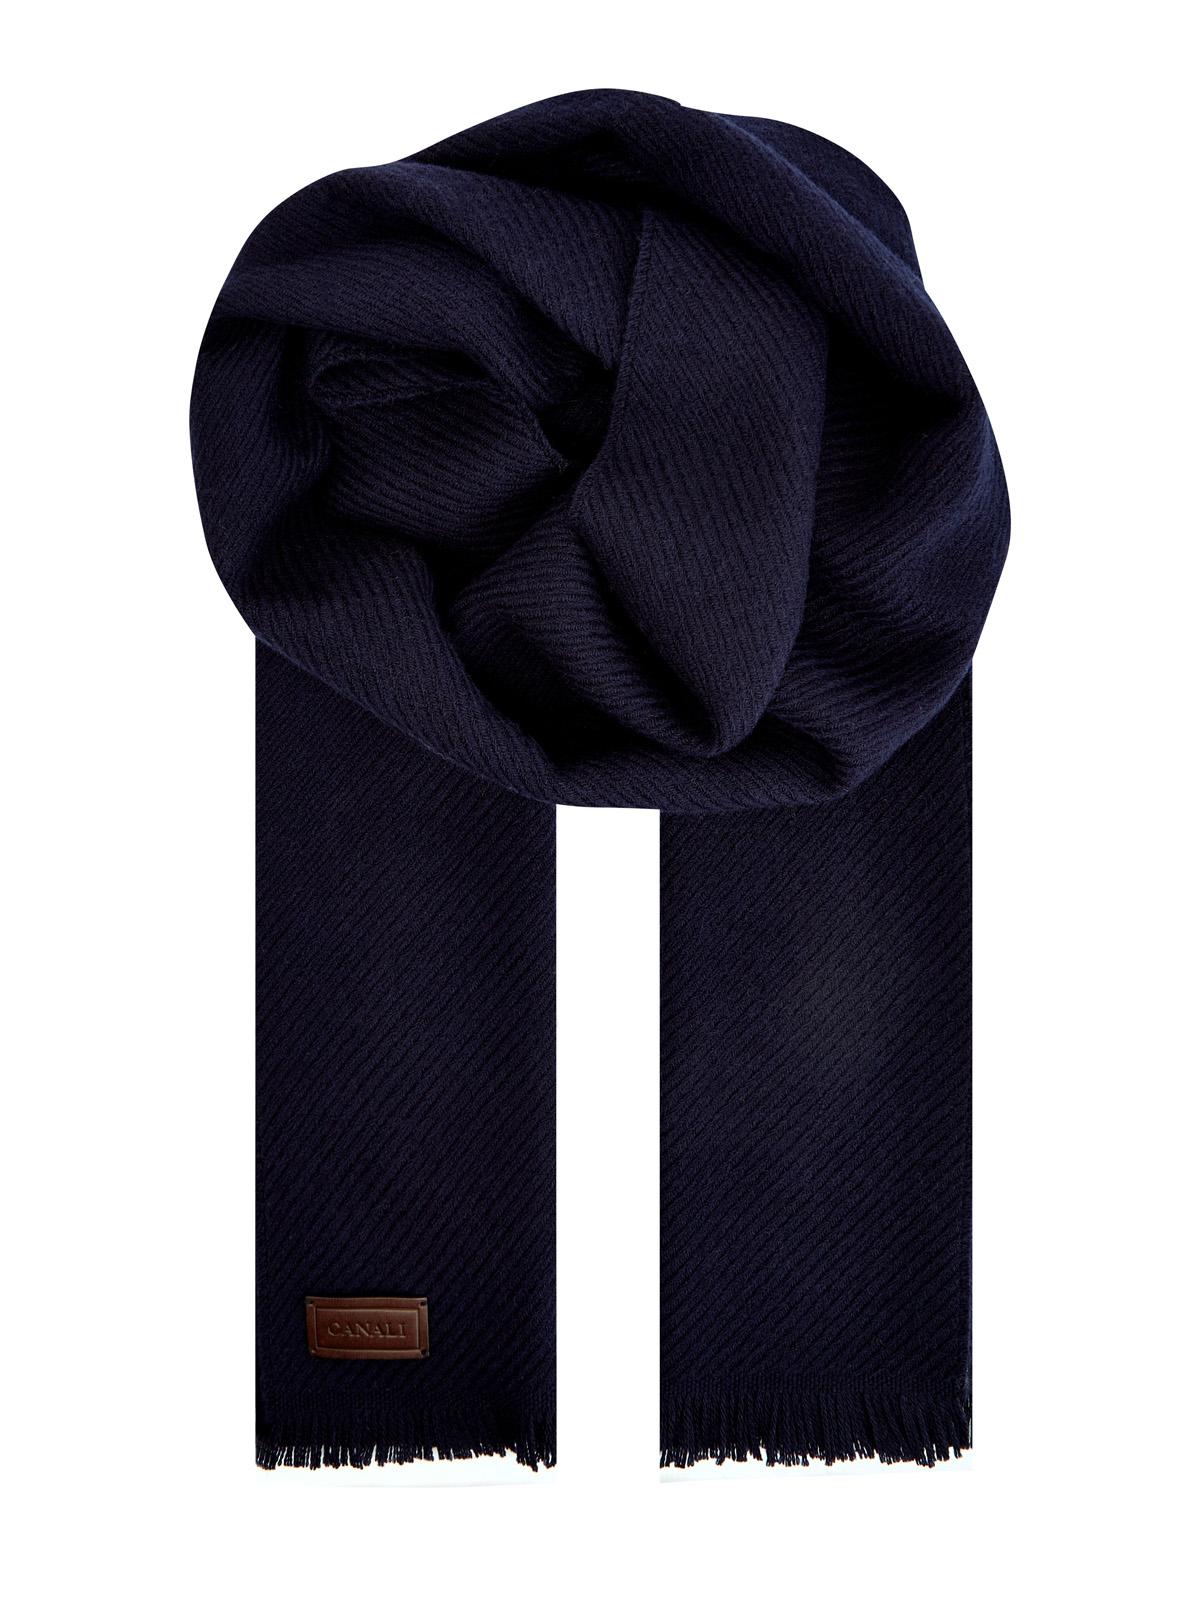 Однотонный шарф из шерстяной пряжи с кожаной нашивкой CANALI, цвет синий, размер 48;50;52;54;56